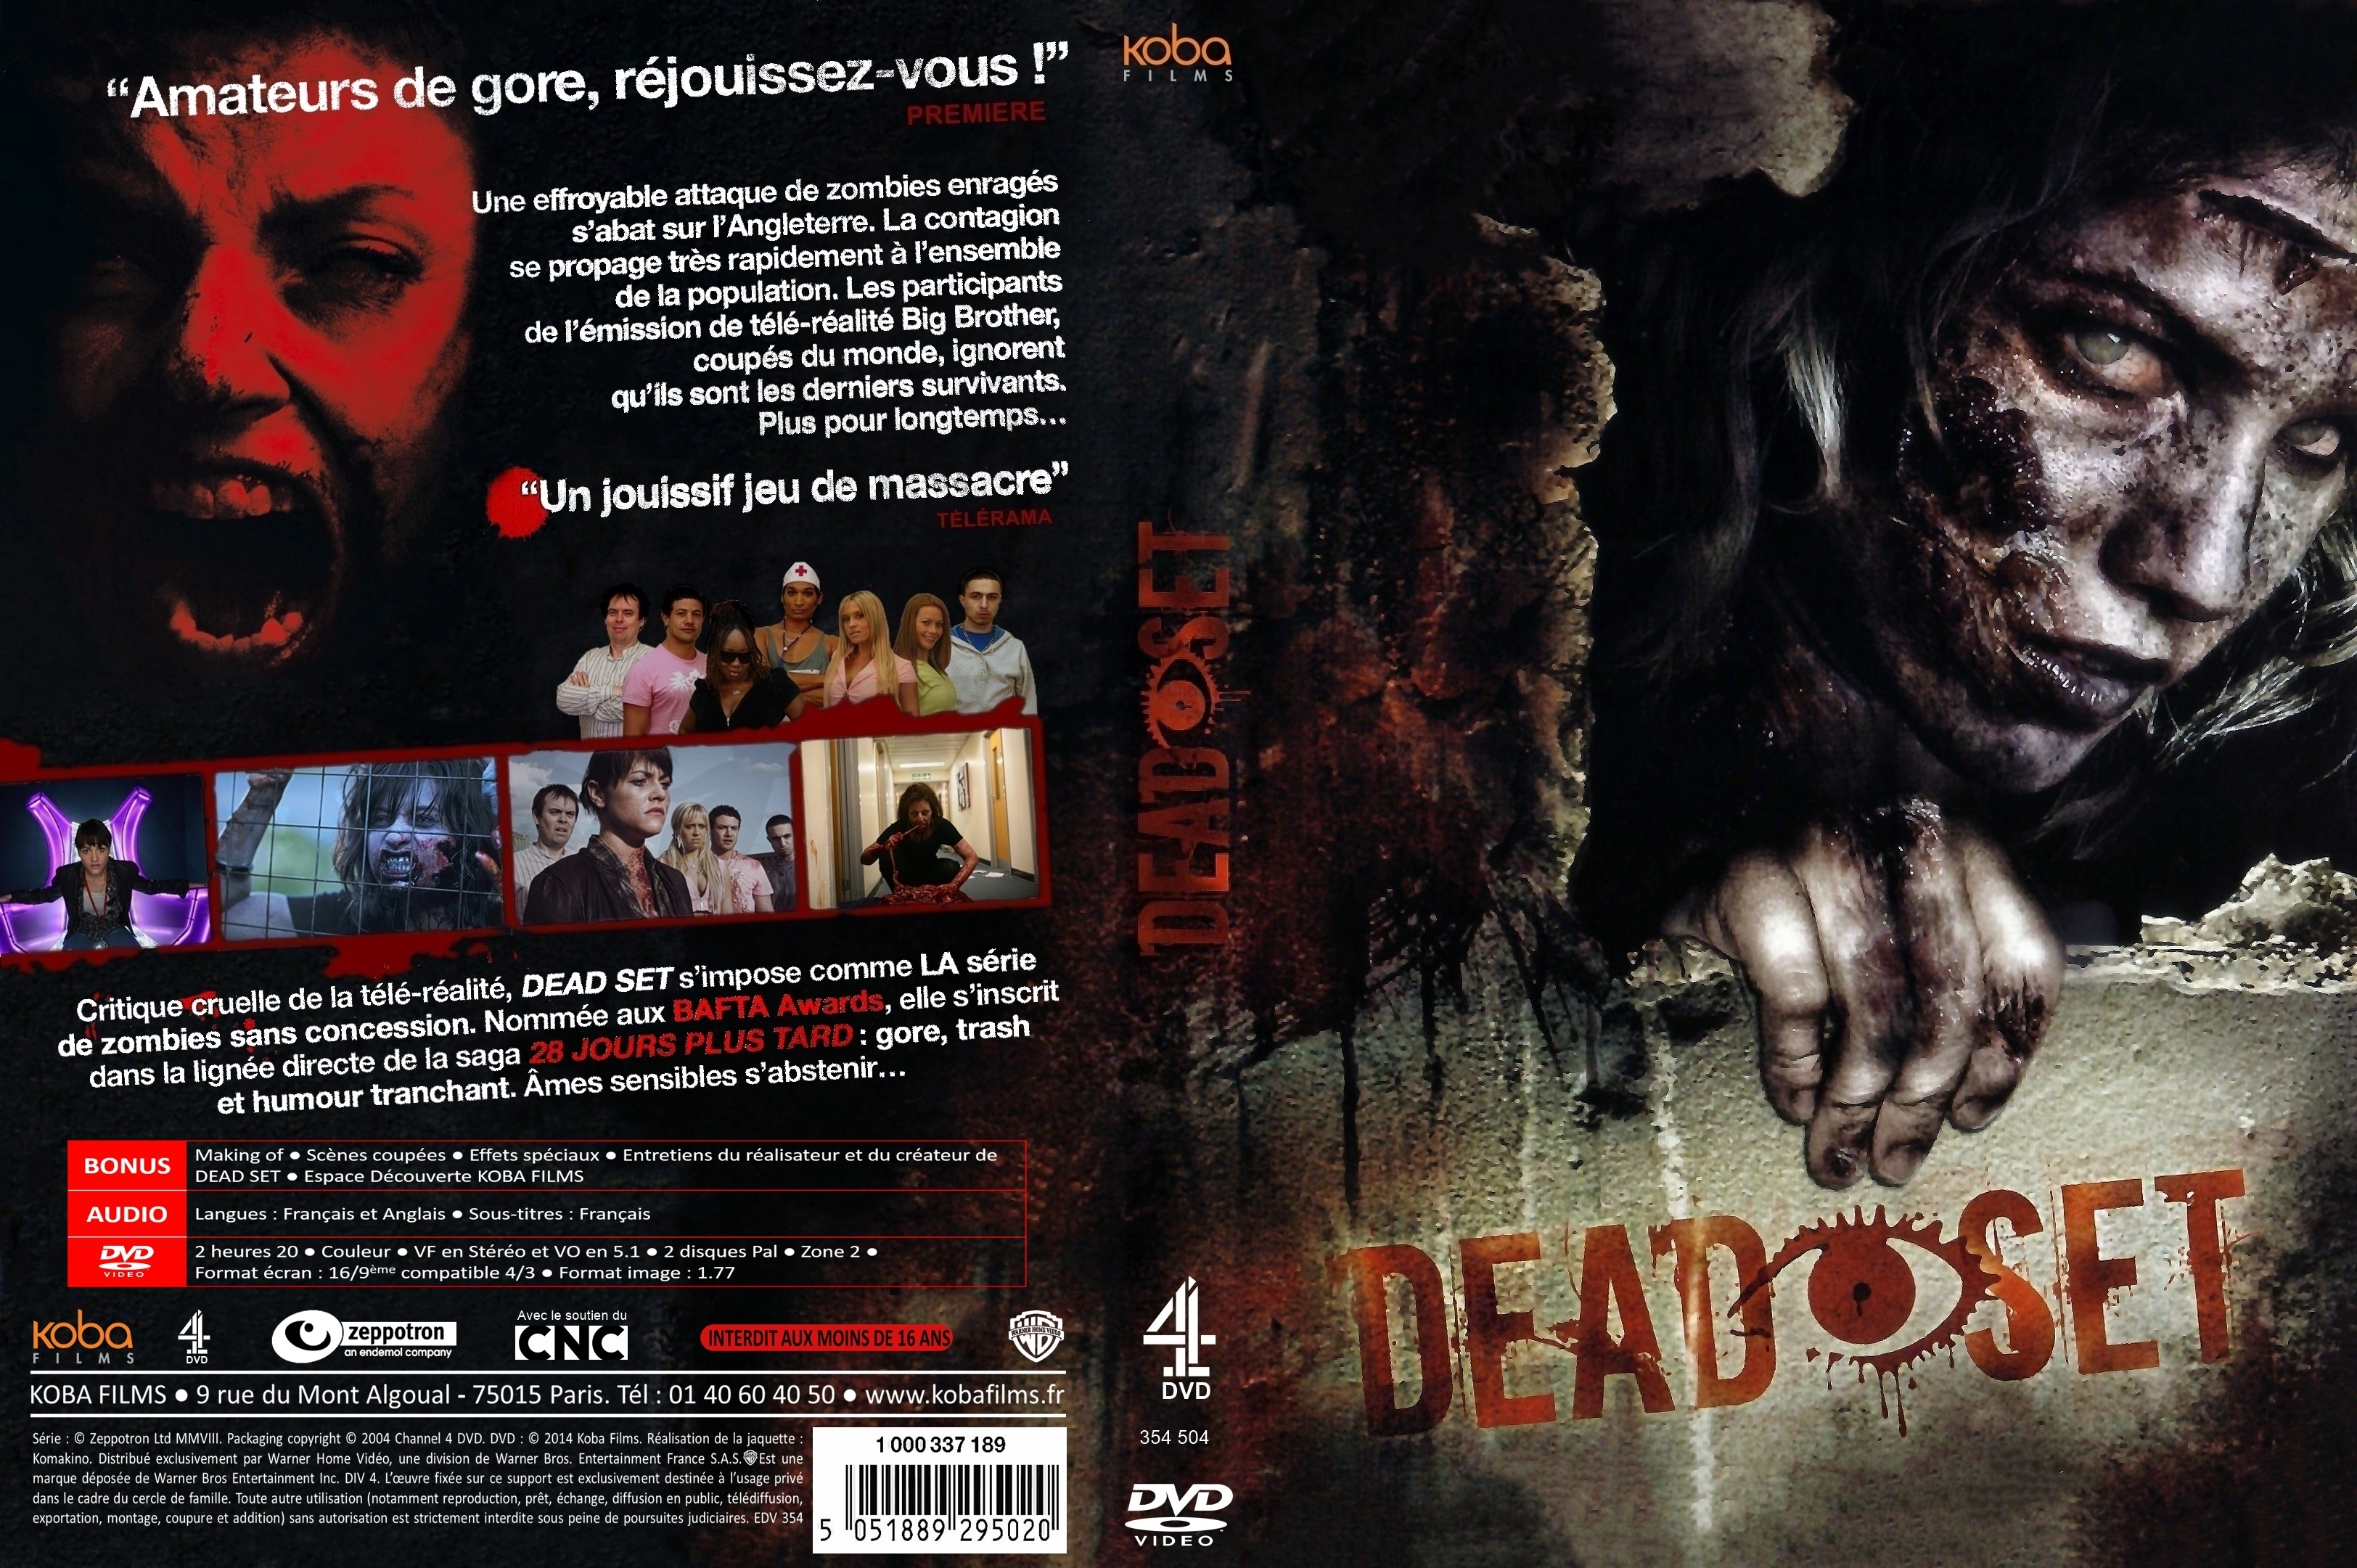 Jaquette DVD Dead set v2